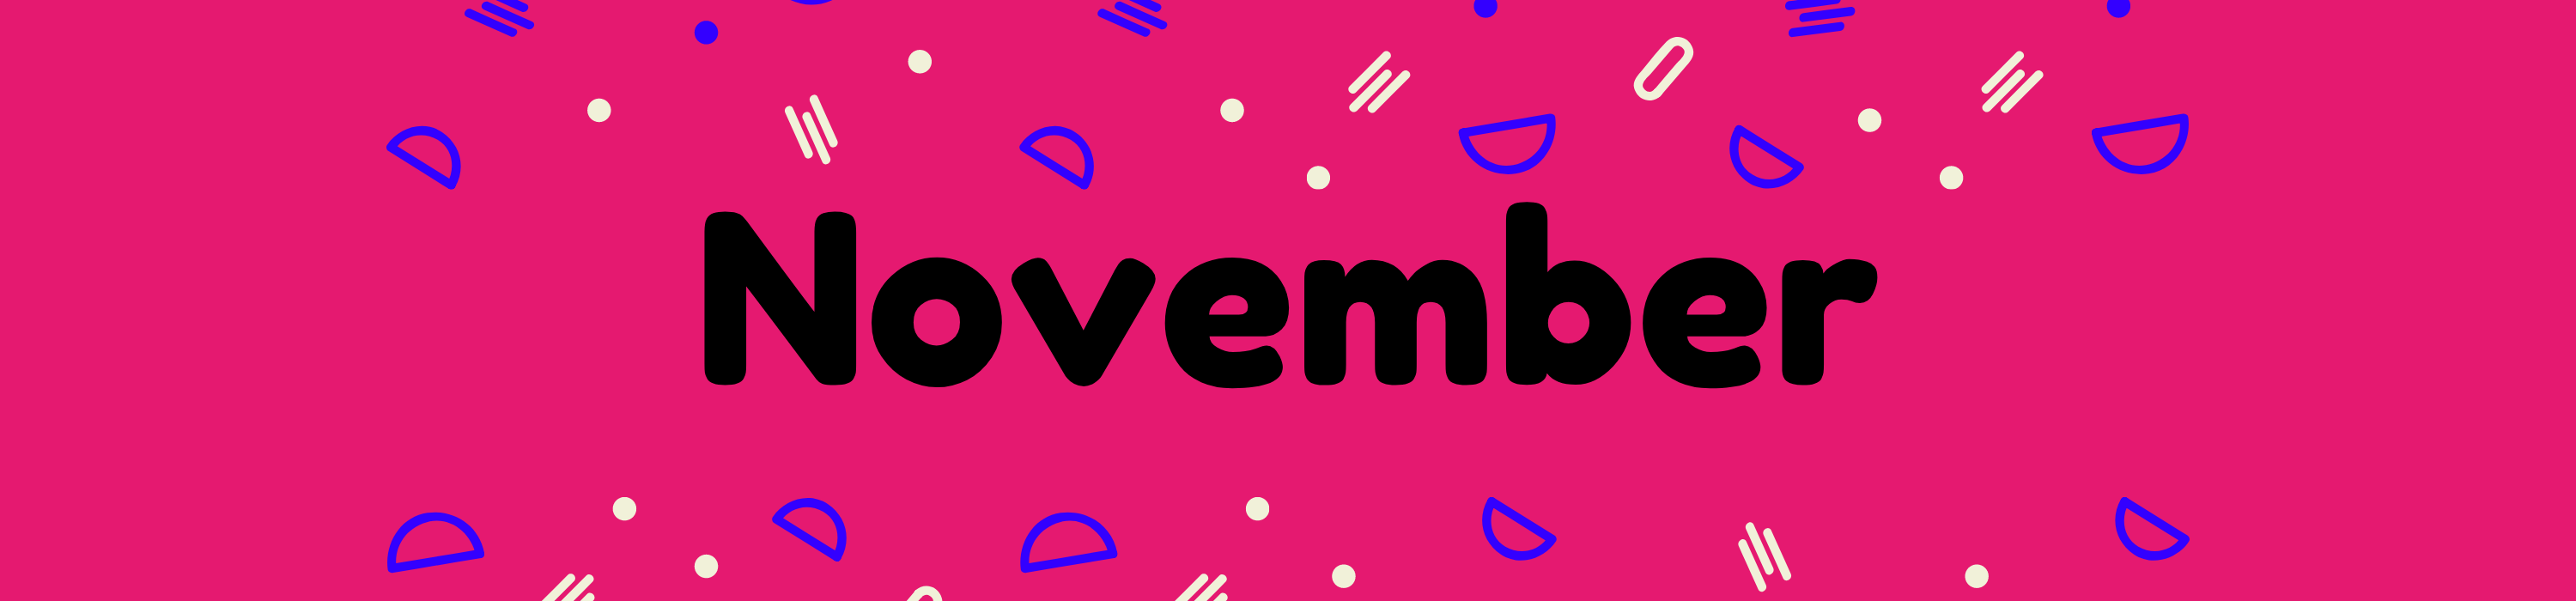 November-banner